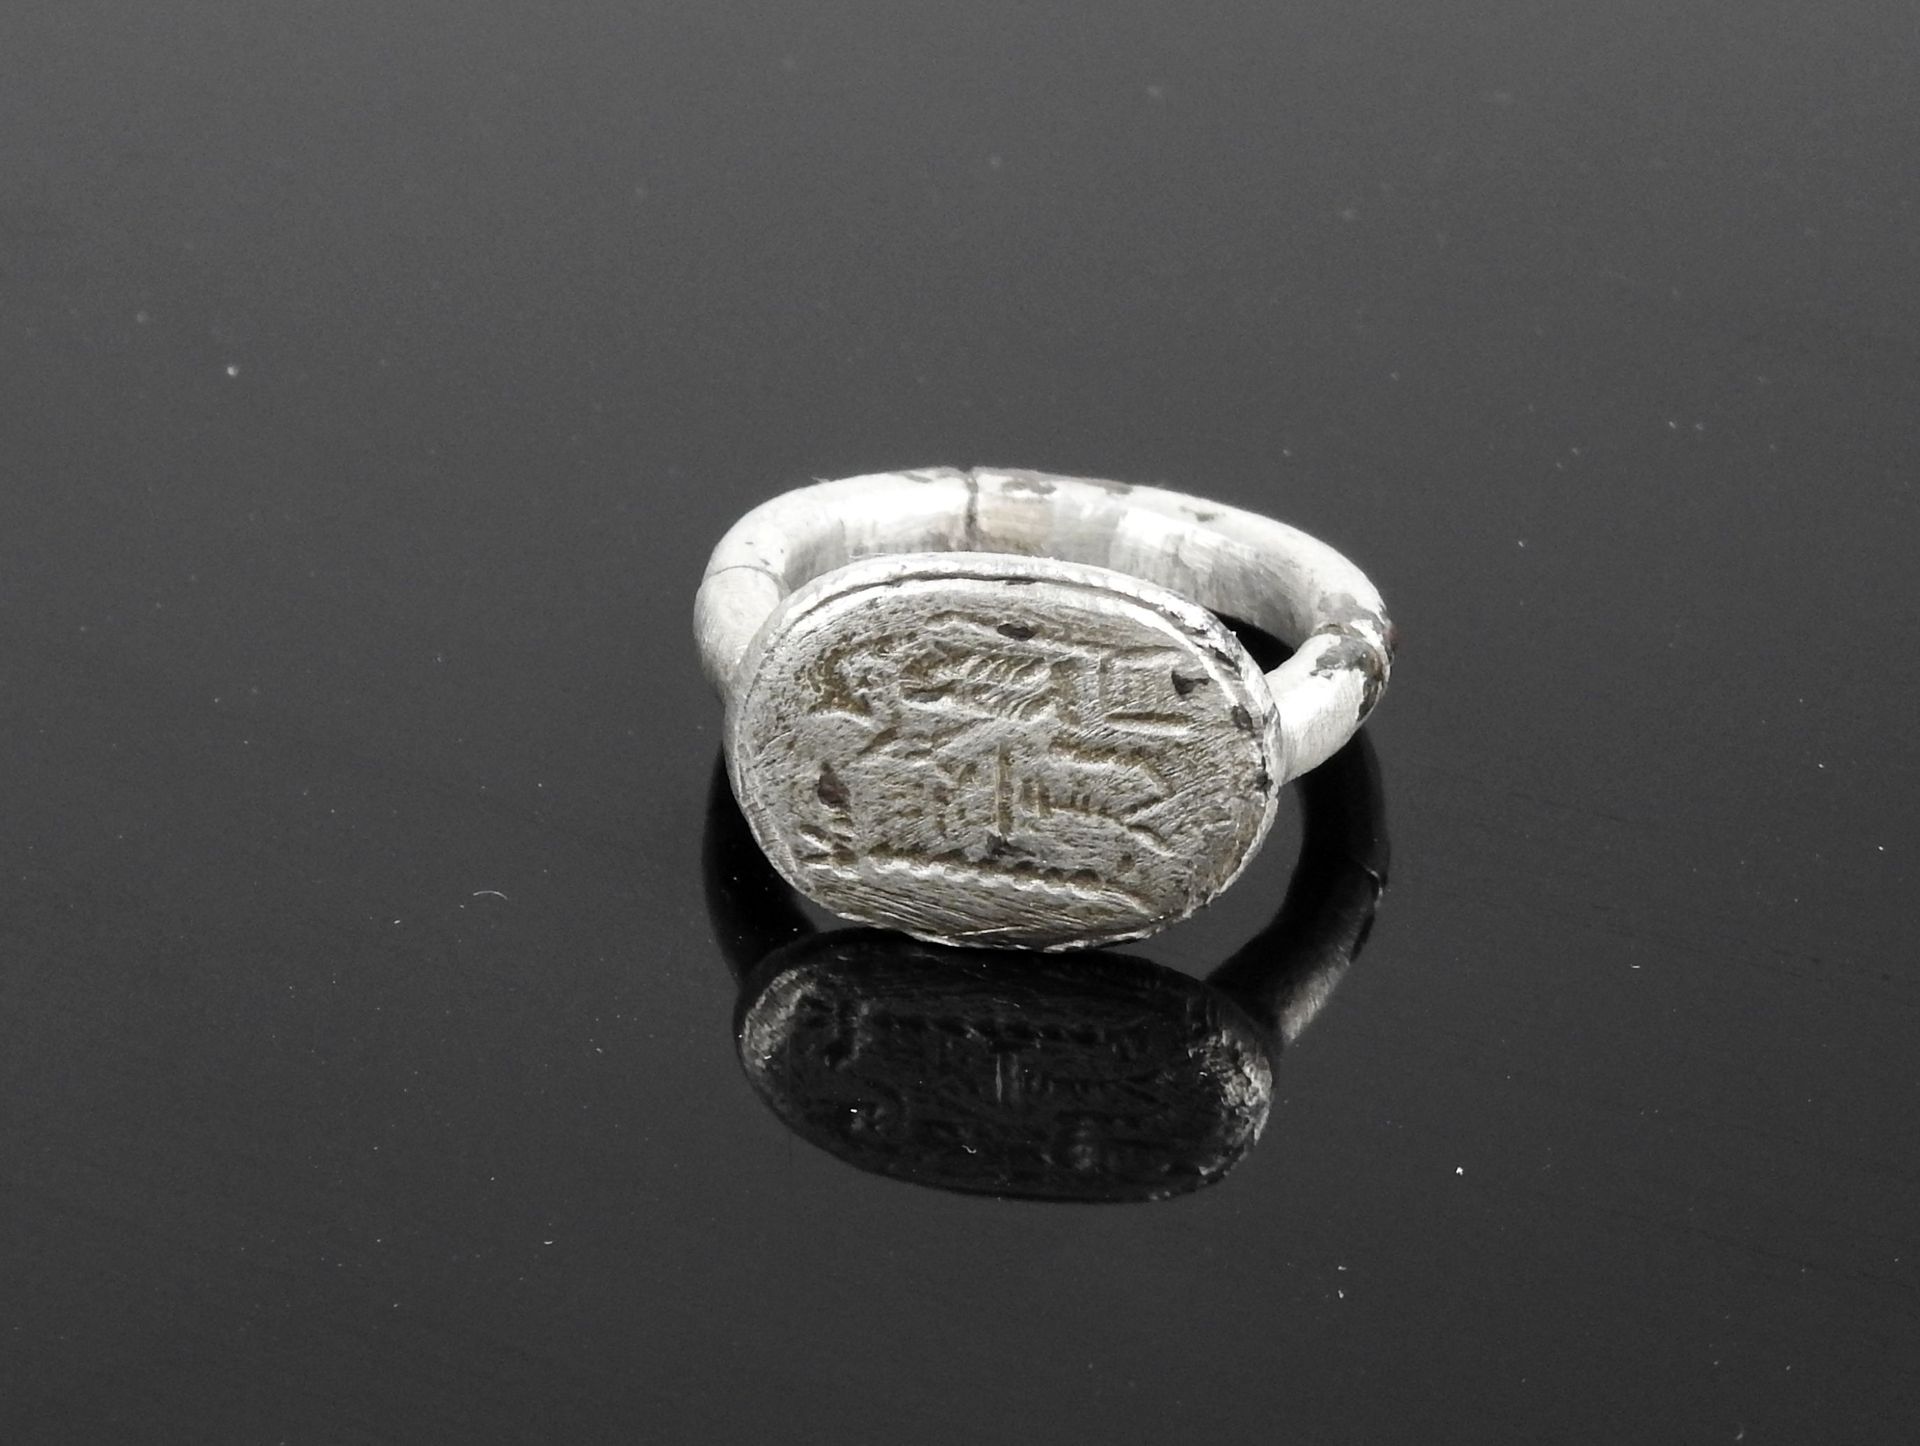 Null 印章环饰有宙斯在宝座上，前面有一个以直立的阳具结束的元素

银指52号的修复

埃及 罗马时期